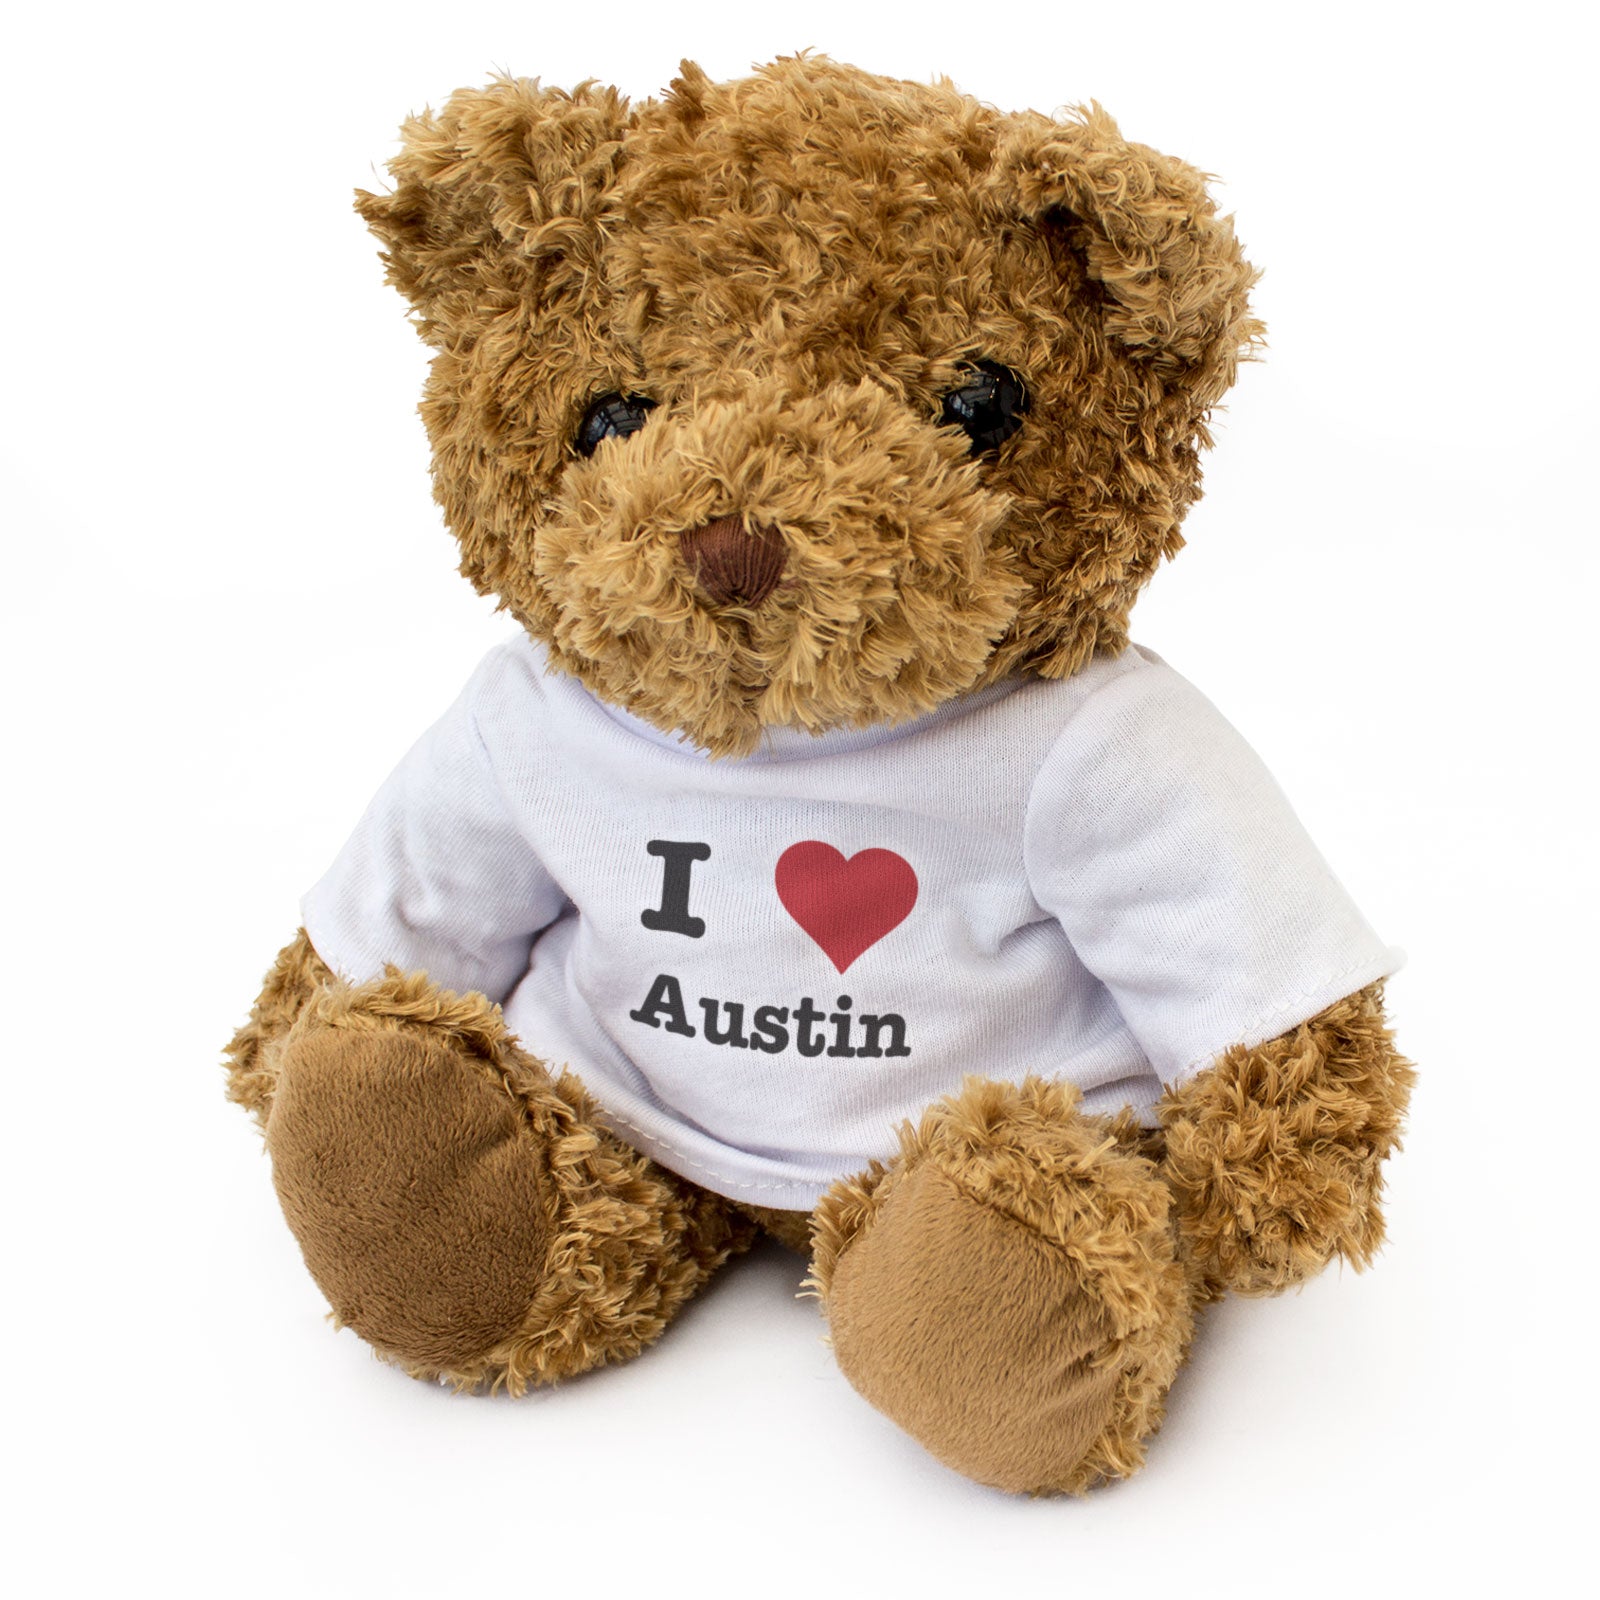 I Love Austin - Teddy Bear